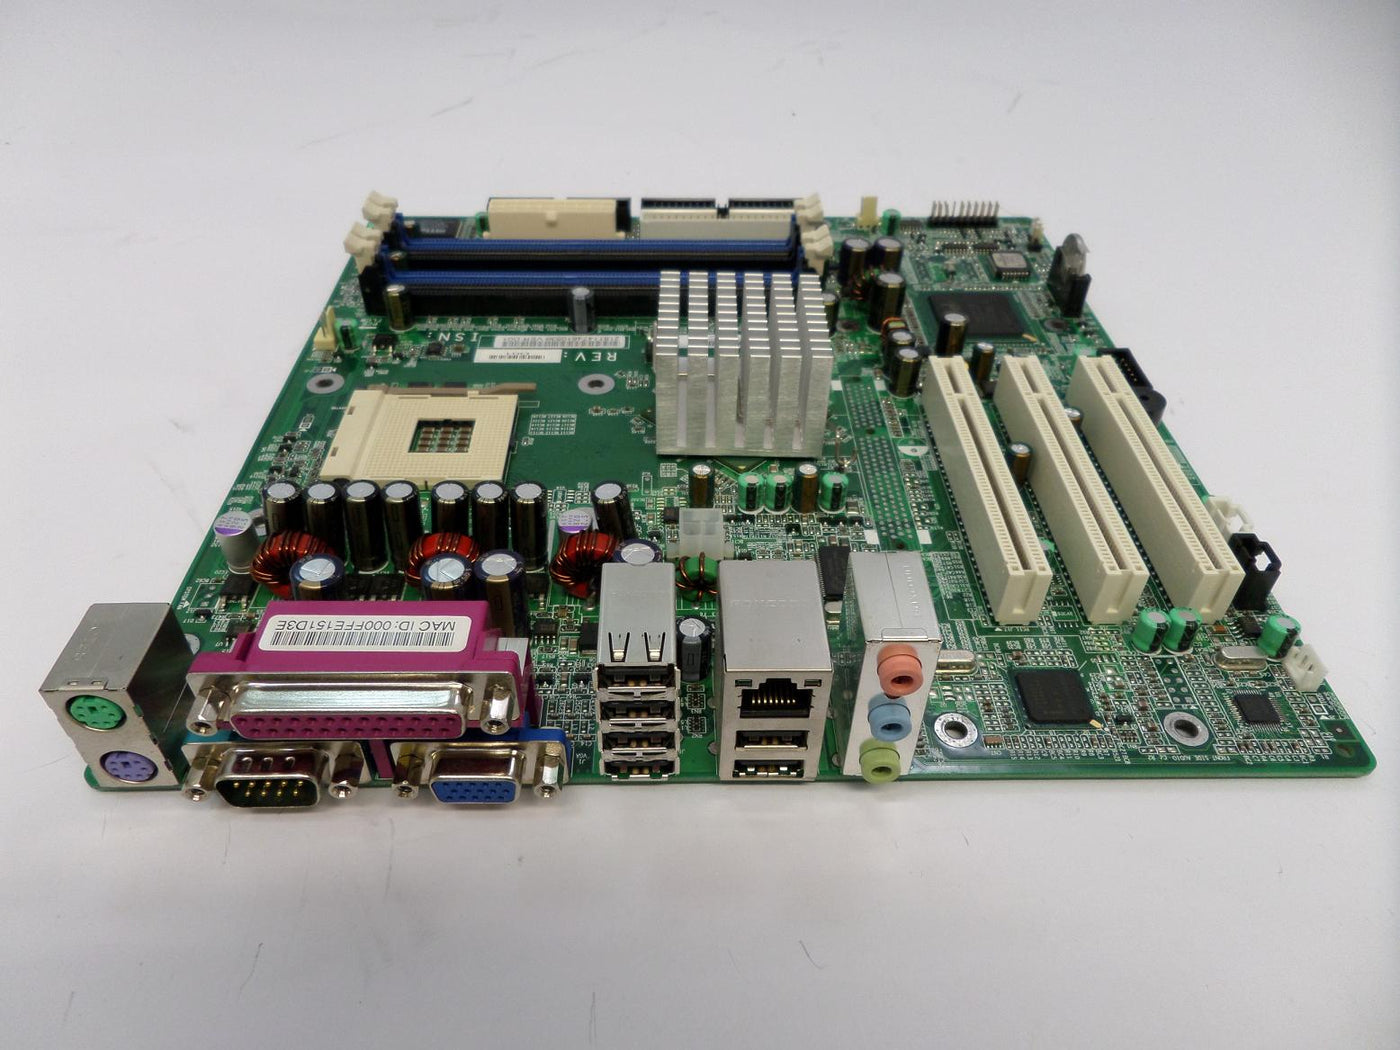 MC1096_351067-001_HP Compaq dx2000 MT Socket 478 Motherboard - Image2